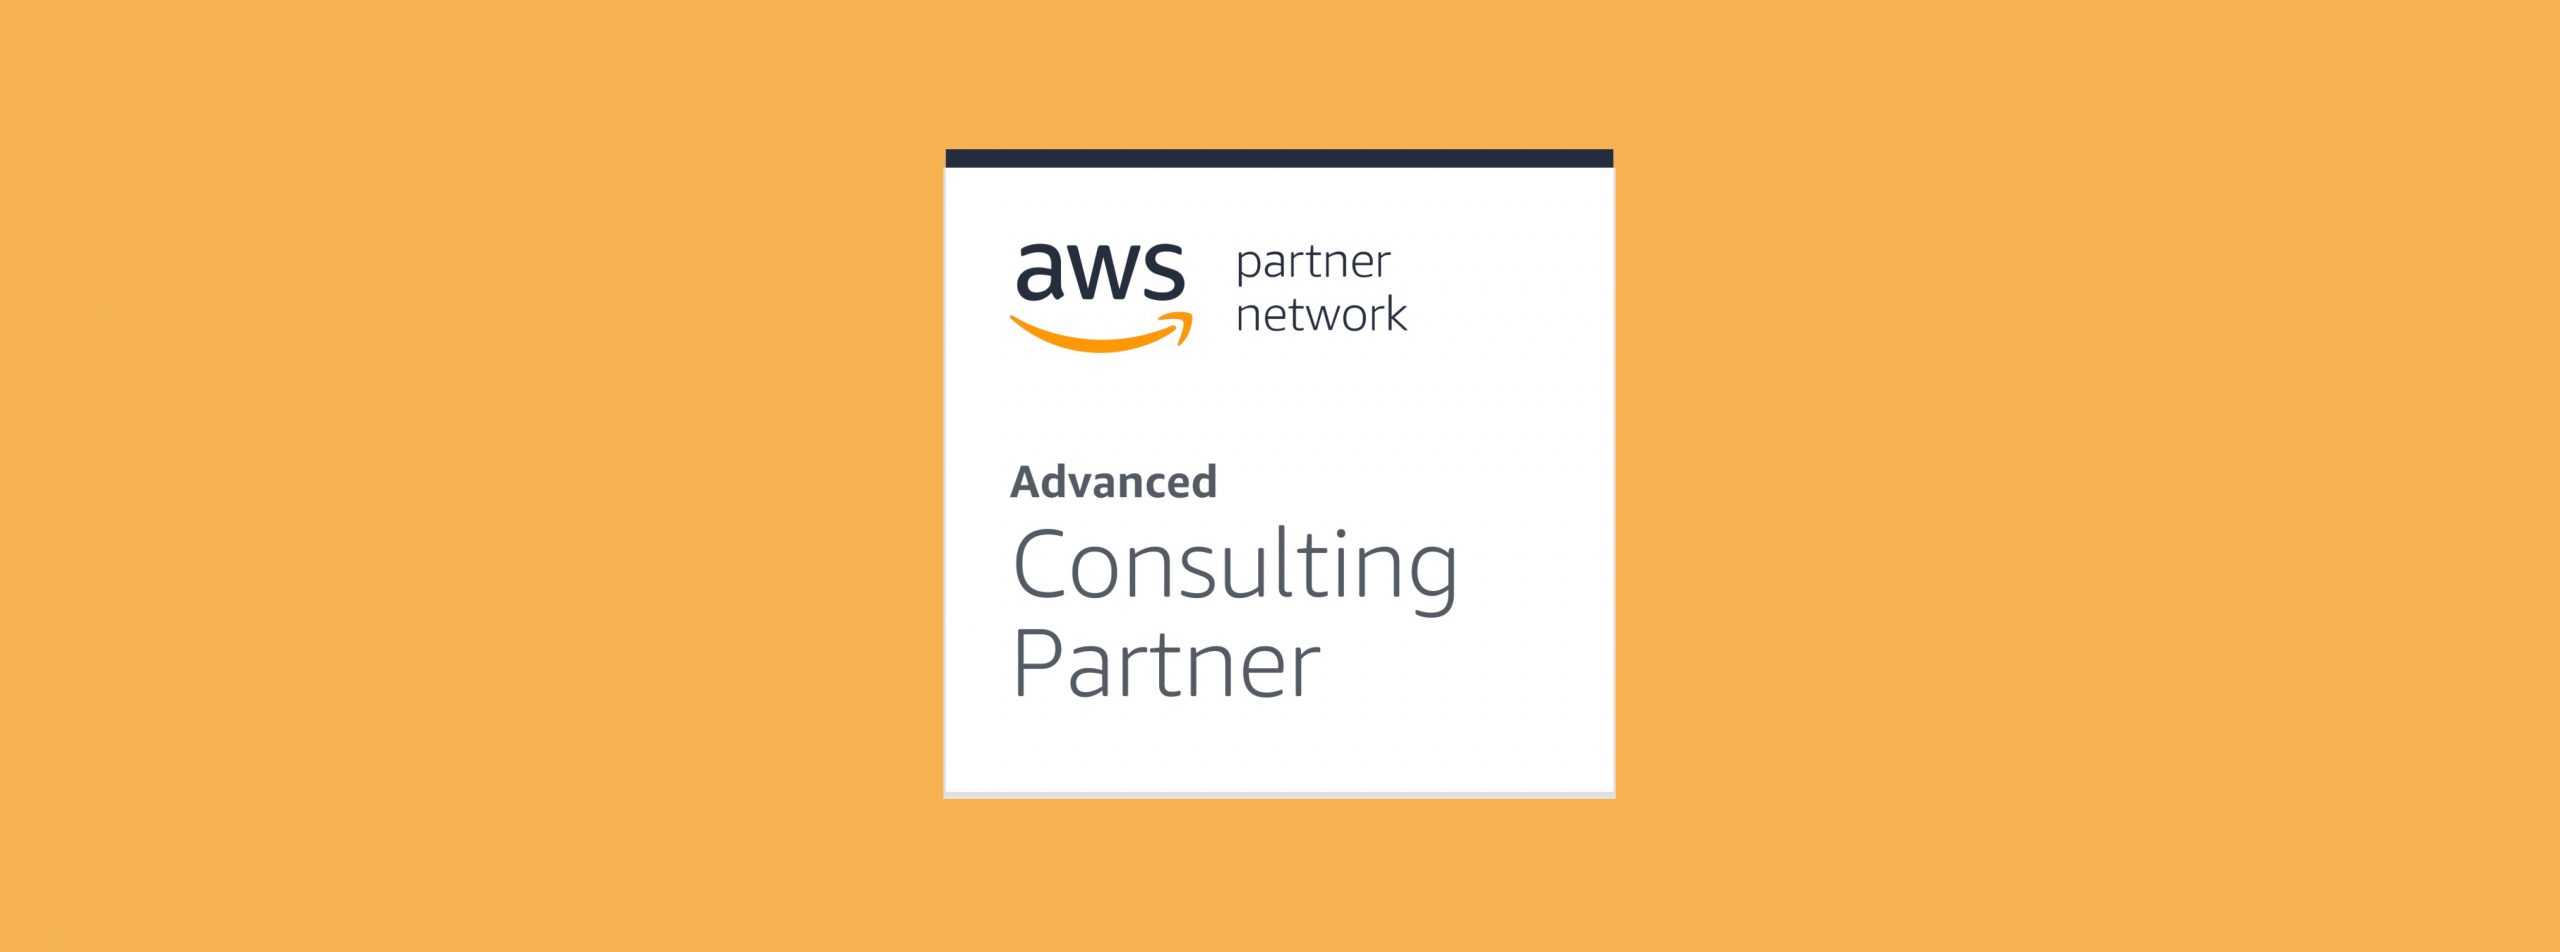 Siamo Advanced Consulting Partner di AWS: quali vantaggi ti dà?